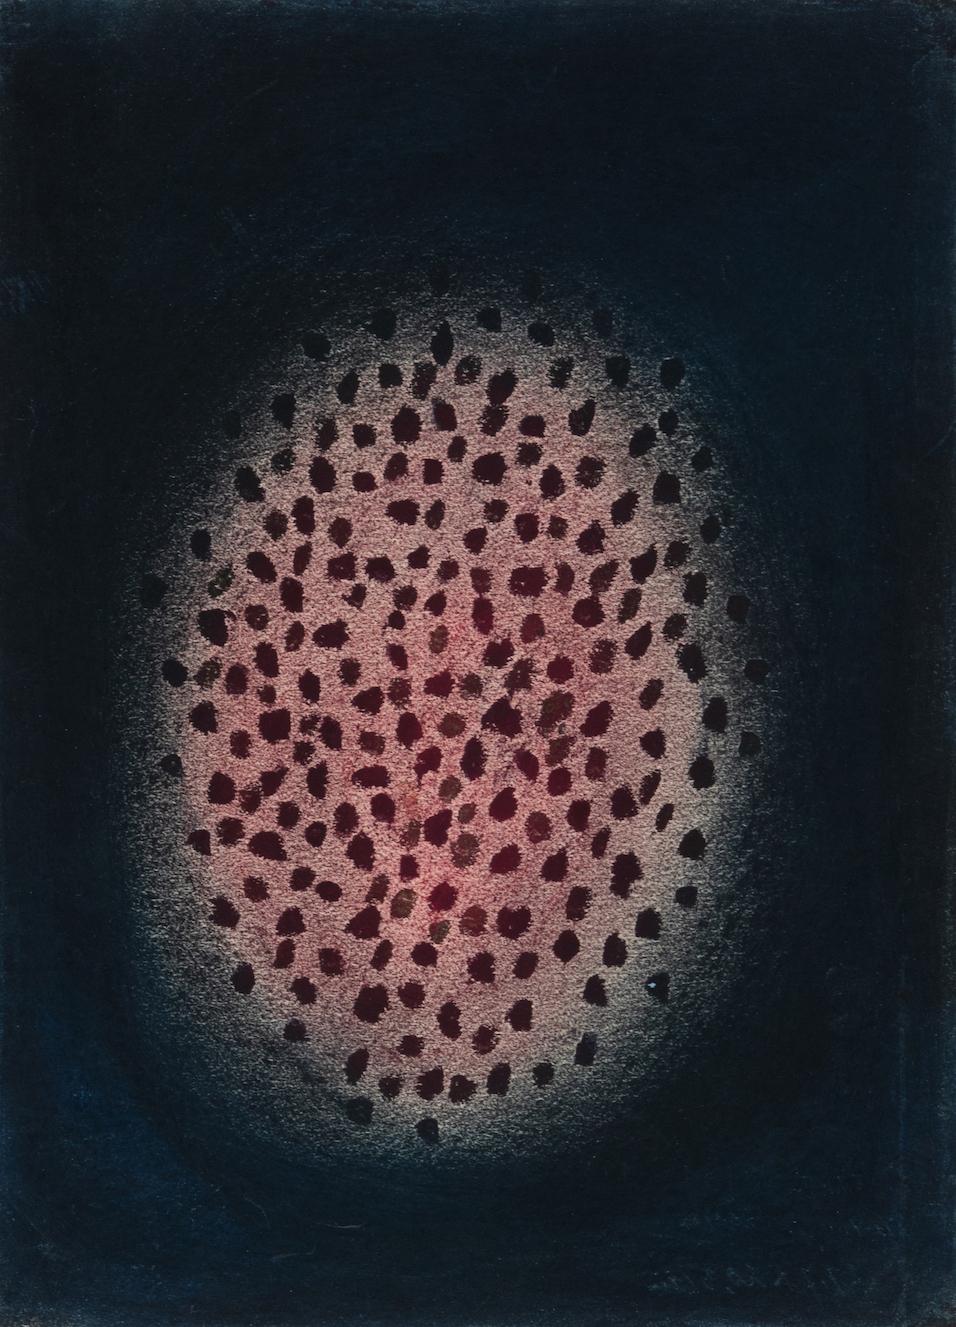 Fire (3) de Yayoi Kusama - Oeuvre contemporaine abstraite sur papier